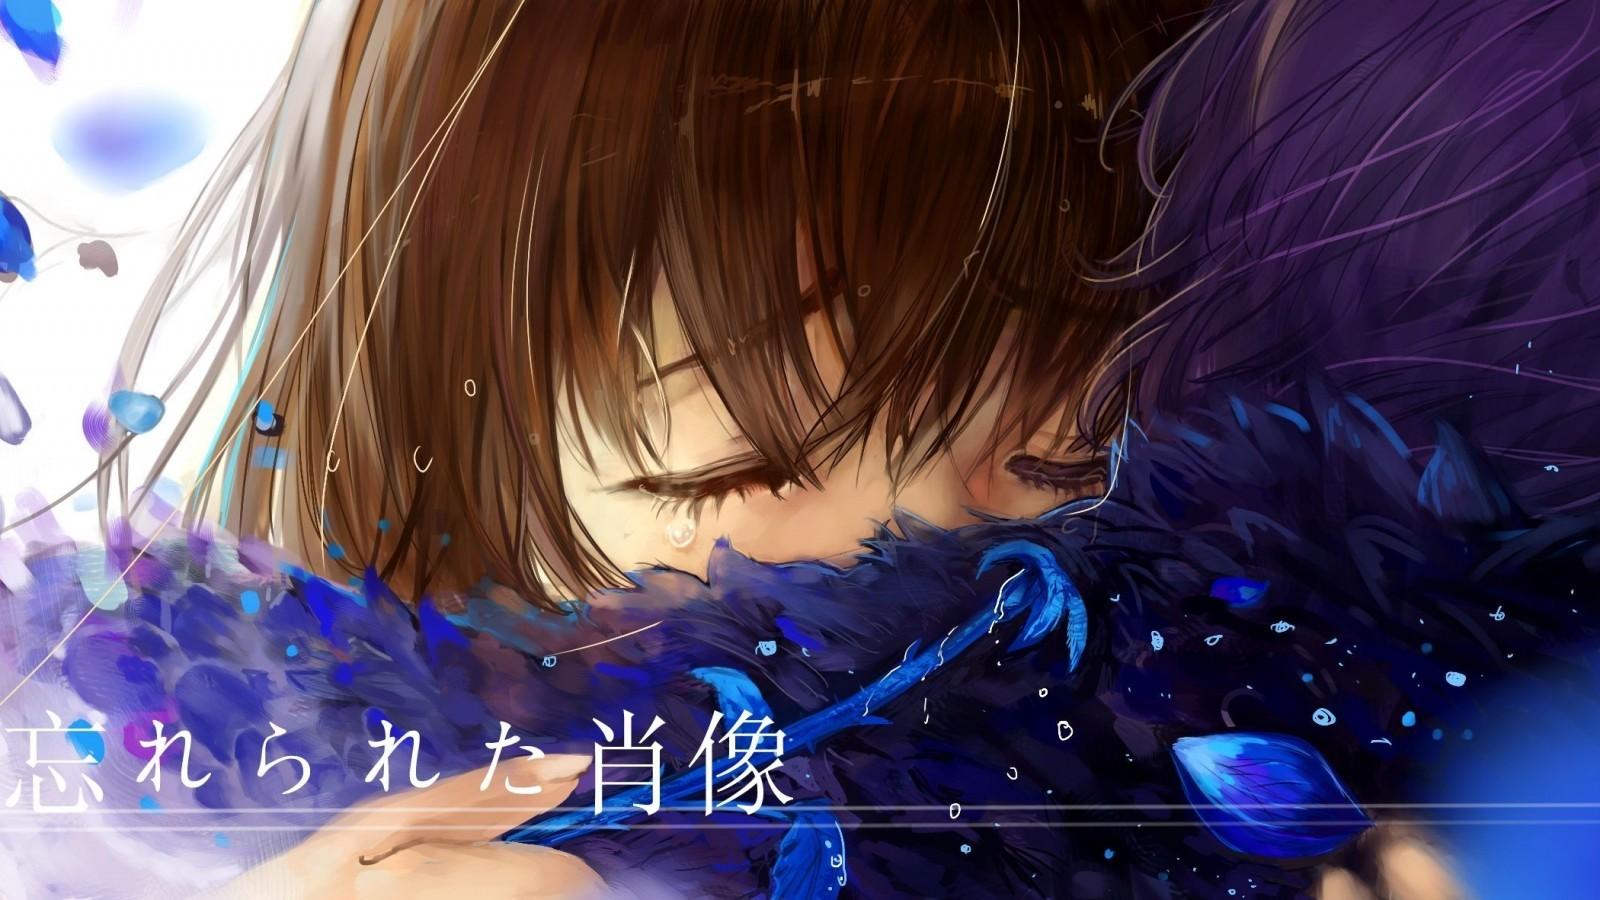 Download 1600x900 Anime Couple, Hug, Crying, Tears